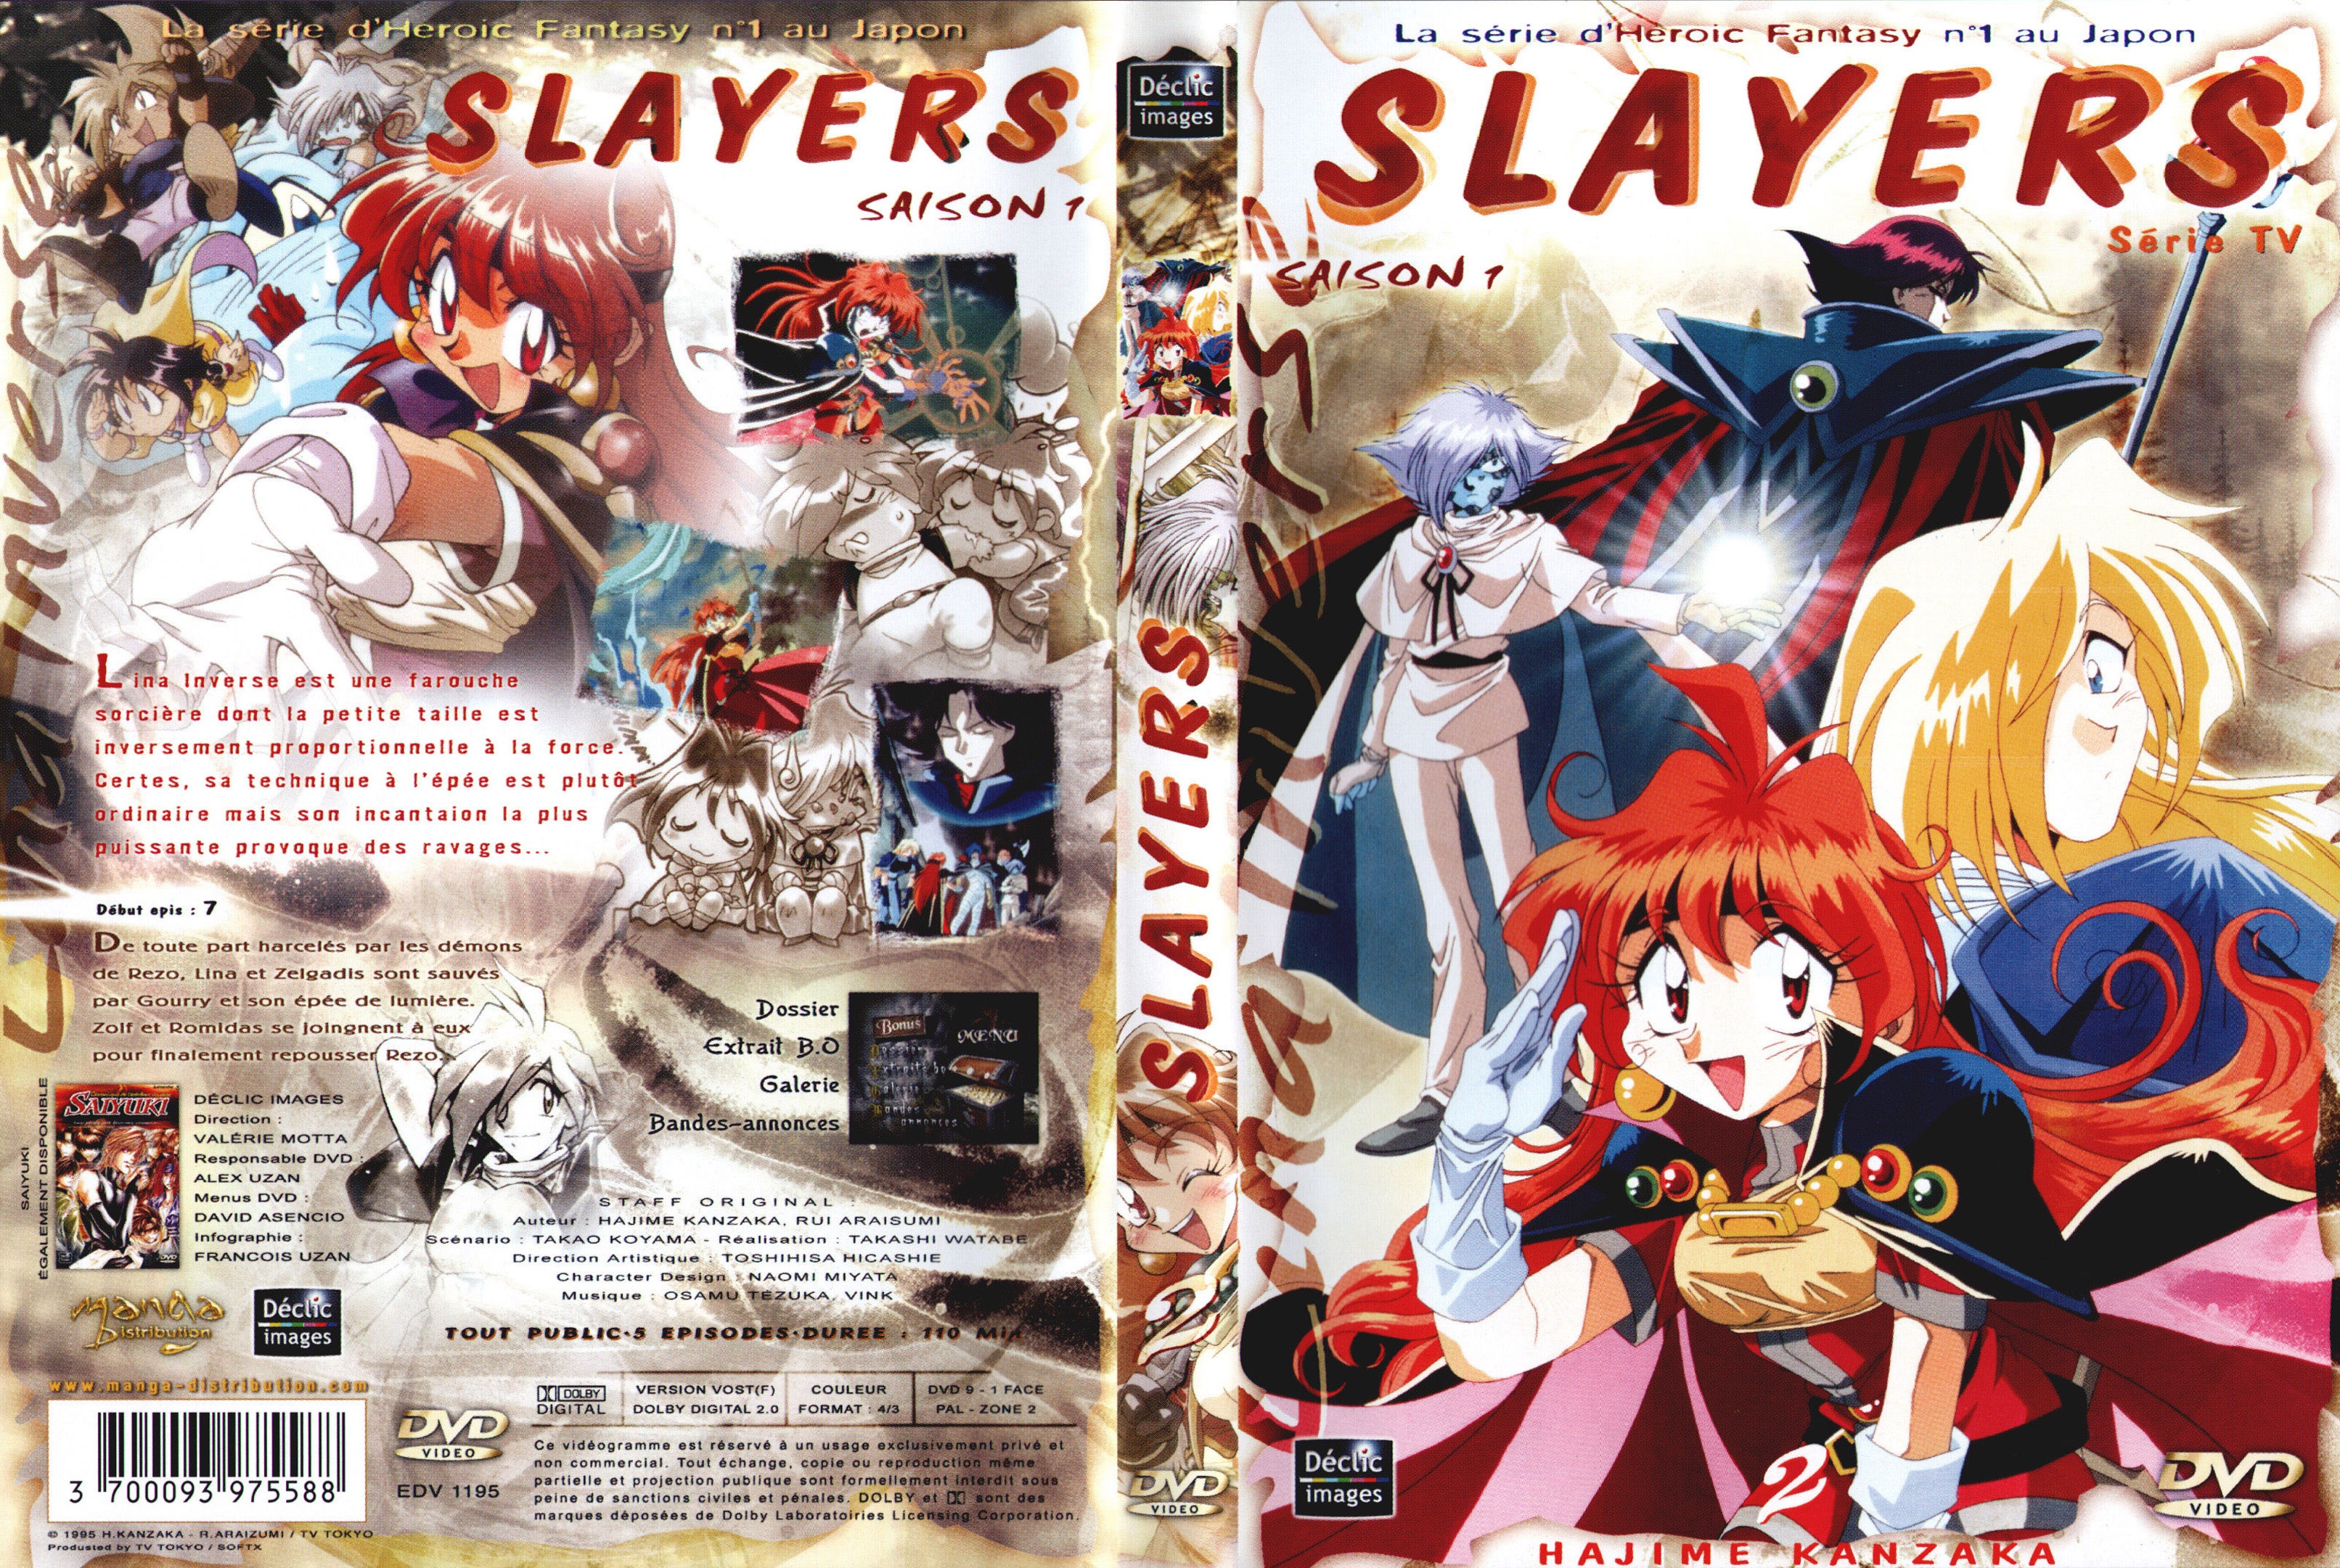 Jaquette DVD Slayers saison 1 DVD 2